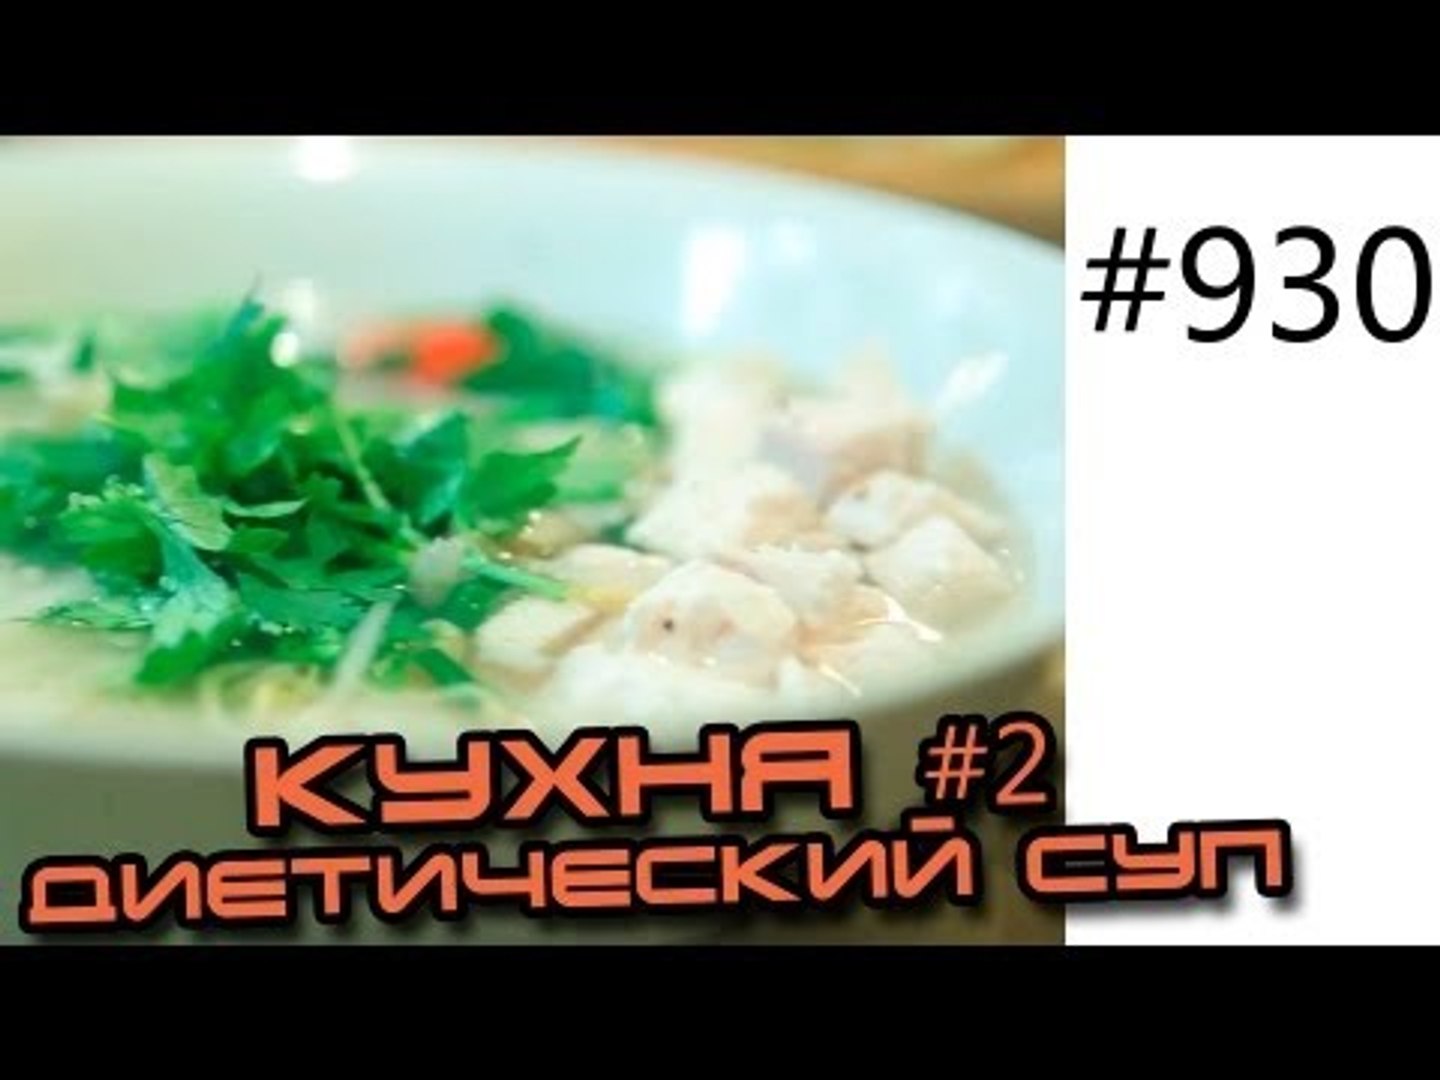 ⁣Кухня 2. Кулинарные фитнес рецепты - Вьетнамский куриный суп. Советы по диетическому питанию.